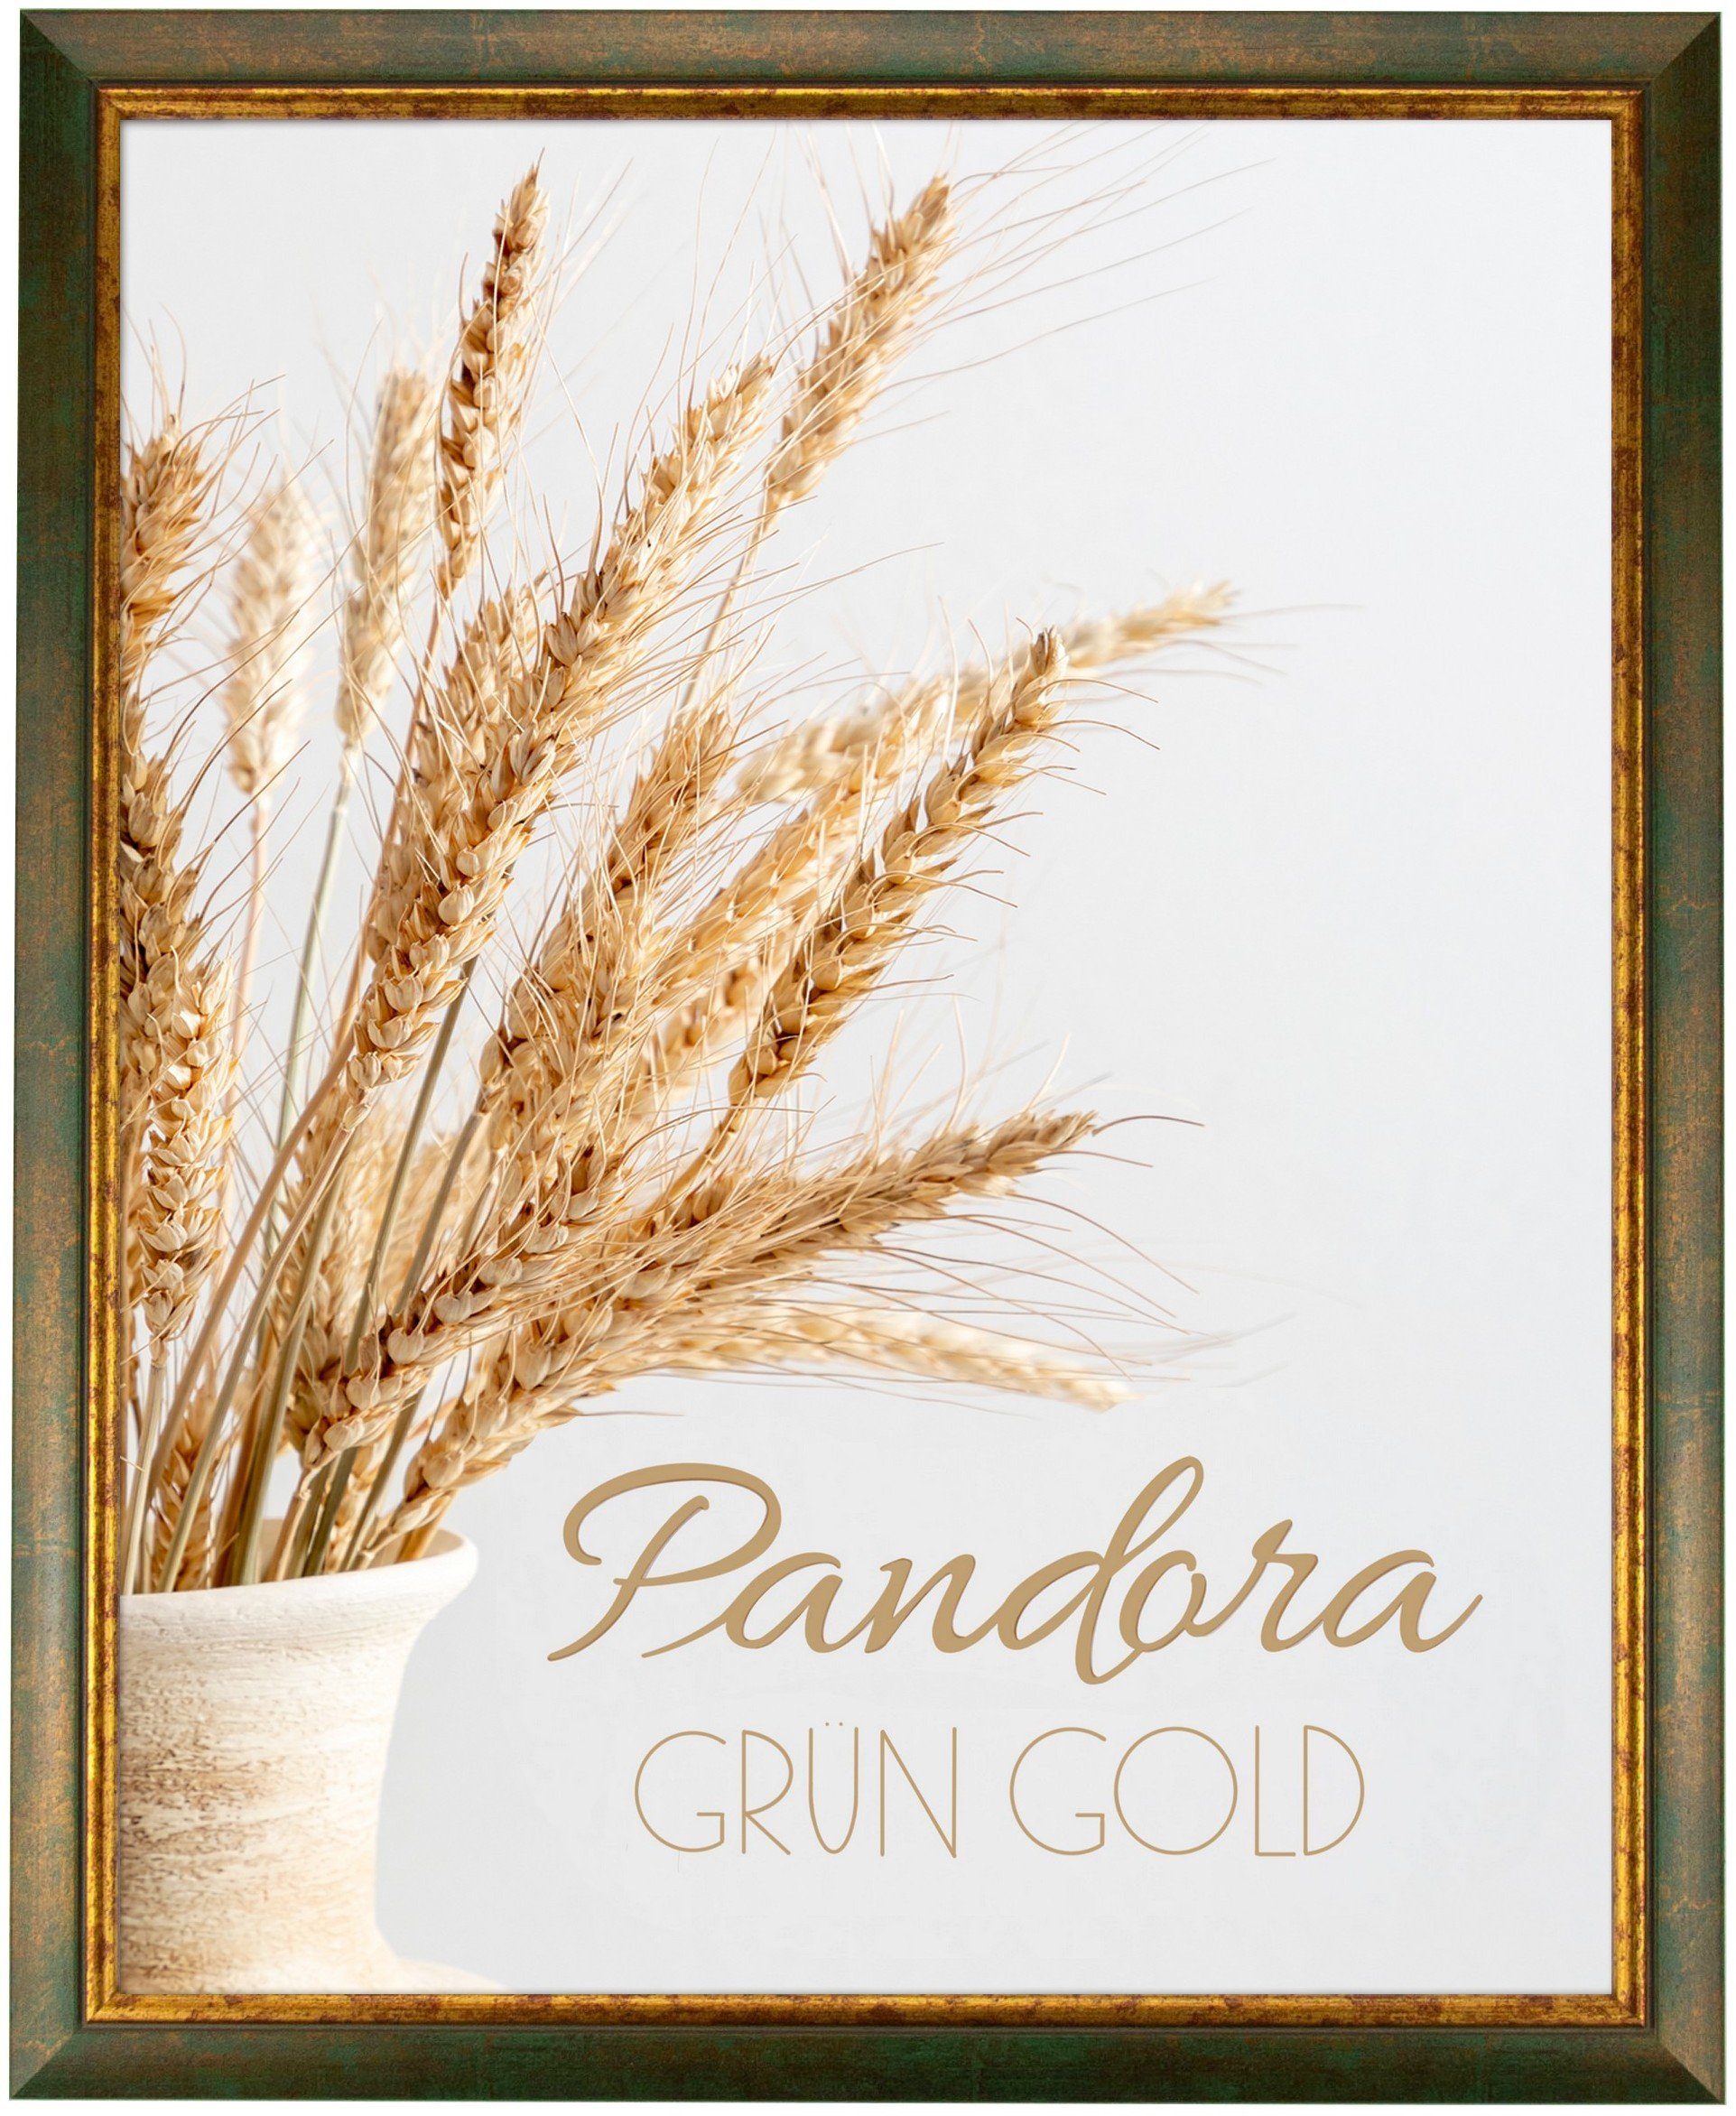 myposterframe Einzelrahmen Bilderrahmen Aged Vintage Pandora, (1 Stück), 20x25 cm, Grün Gold, Echtholz